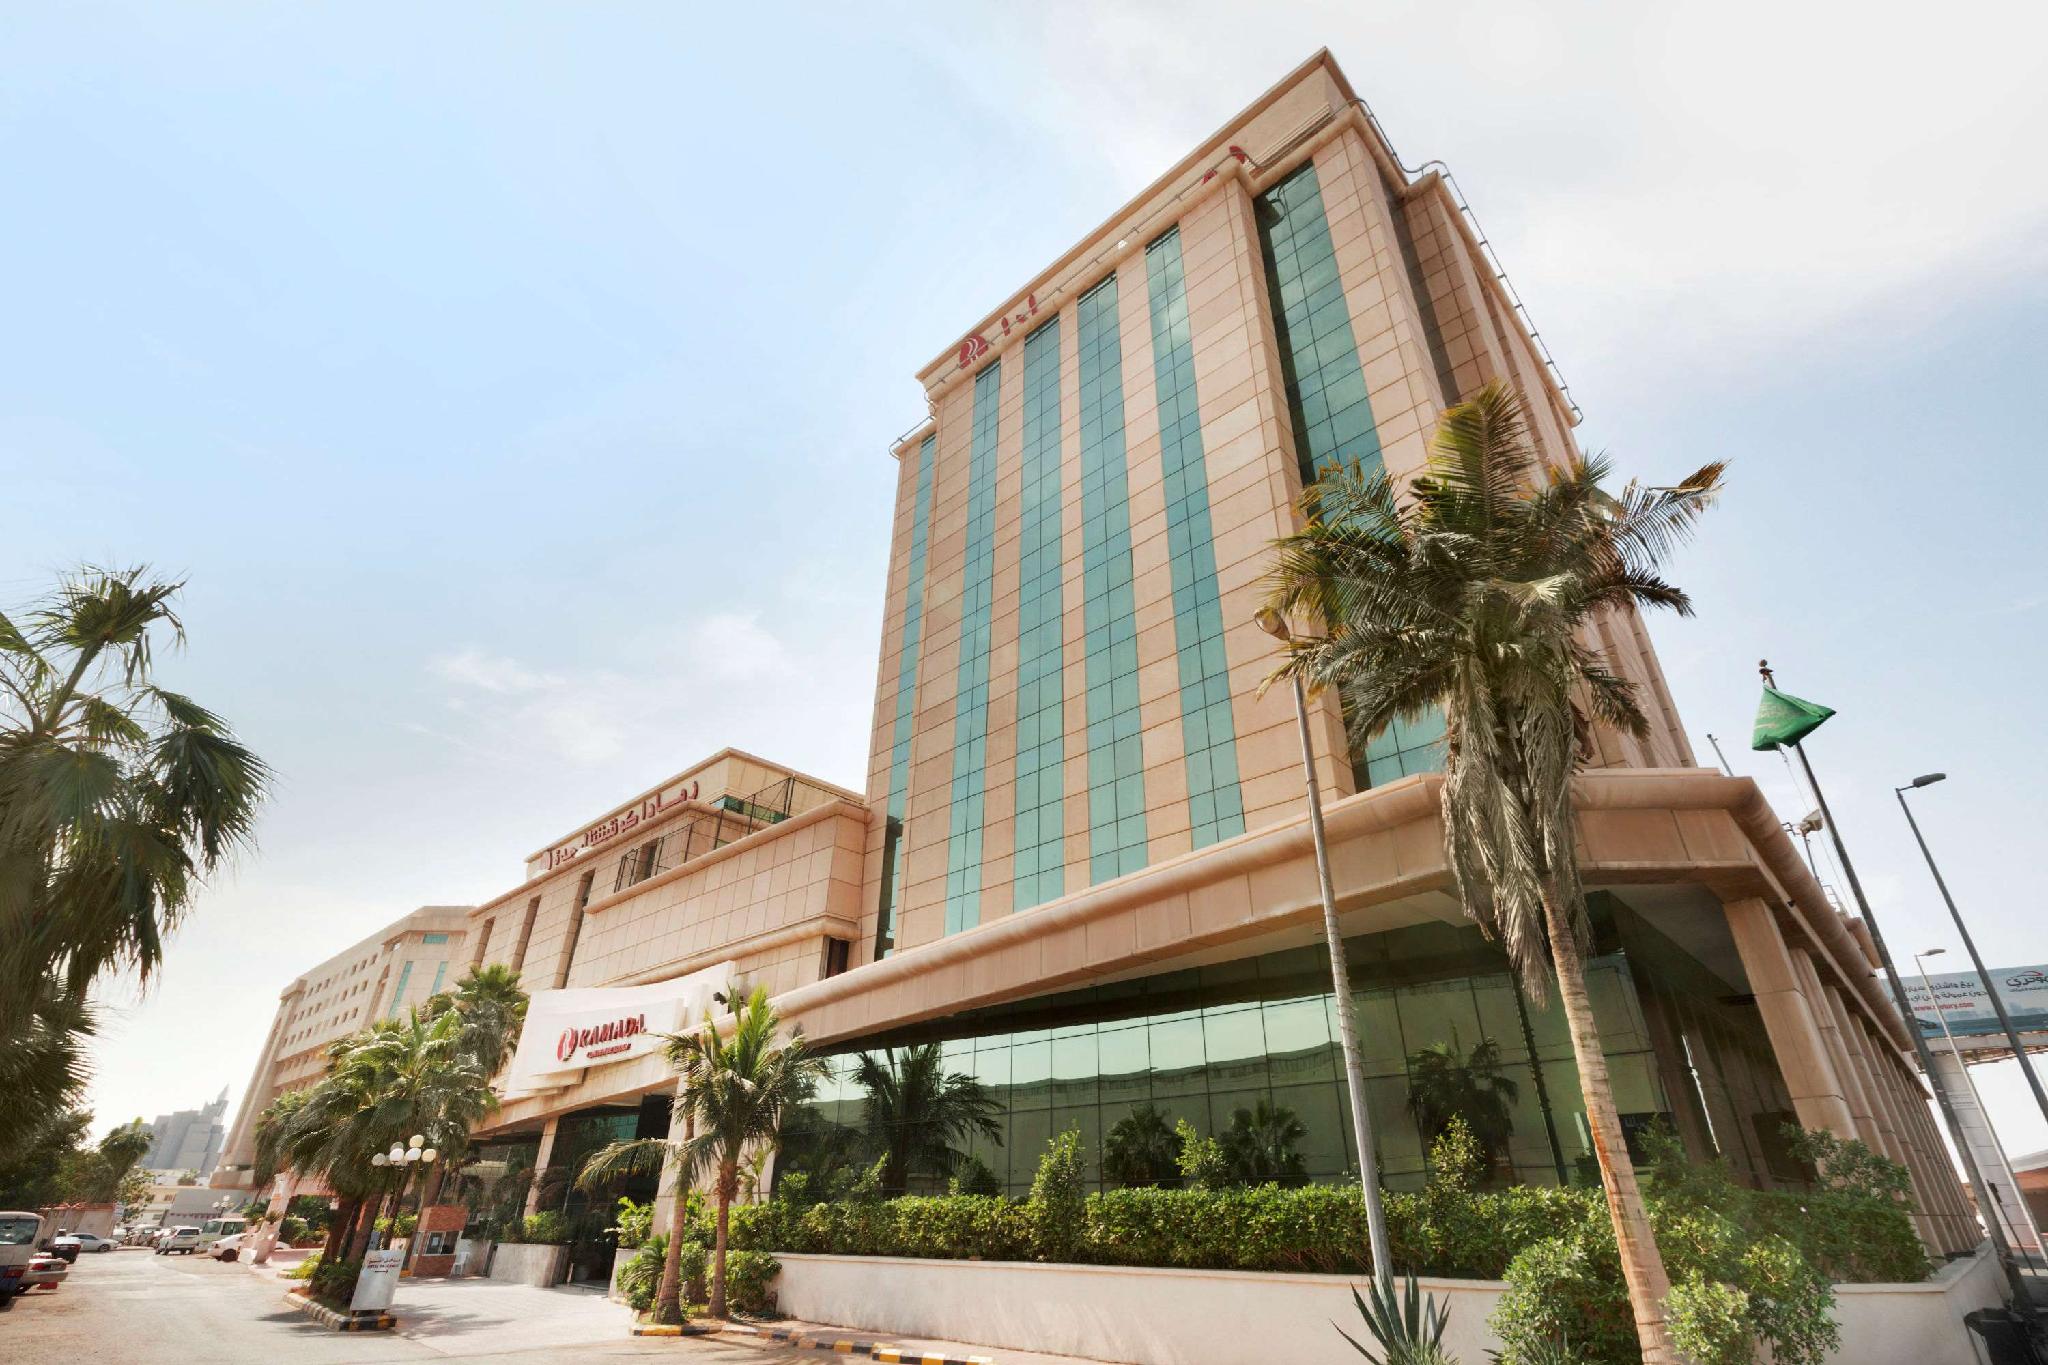 Ramada by Wyndham Continental Jeddah - Jeddah - Saudi Arabia Hotels